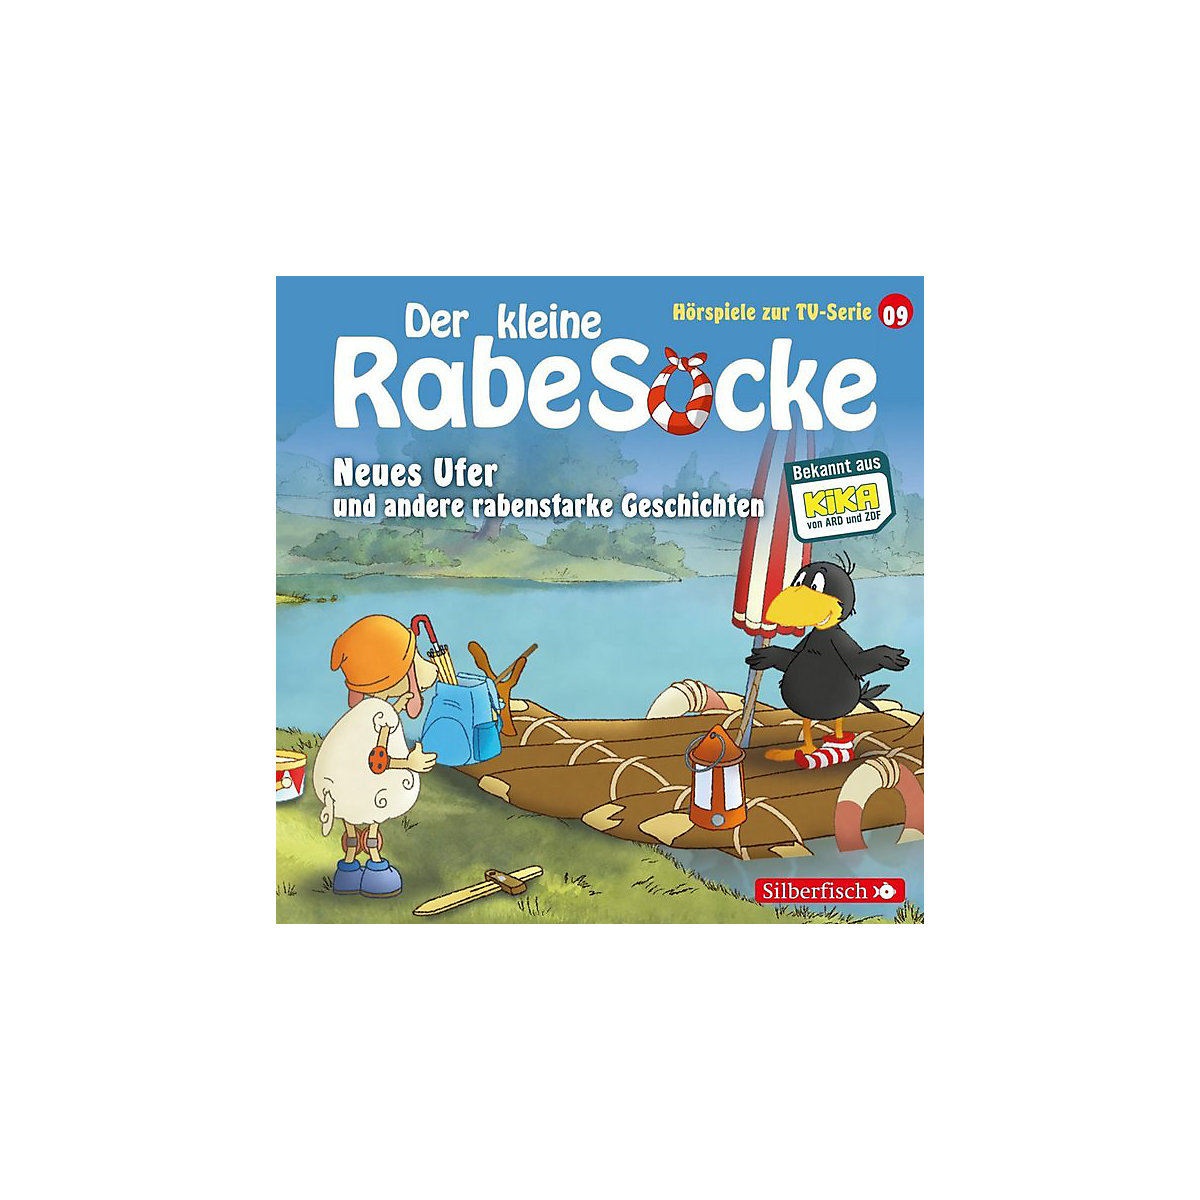 CD Der kleine Rabe Socke 09: Neues Ufer und andere rabenstarke Geschichten (Hörspiel zur TV Serie)